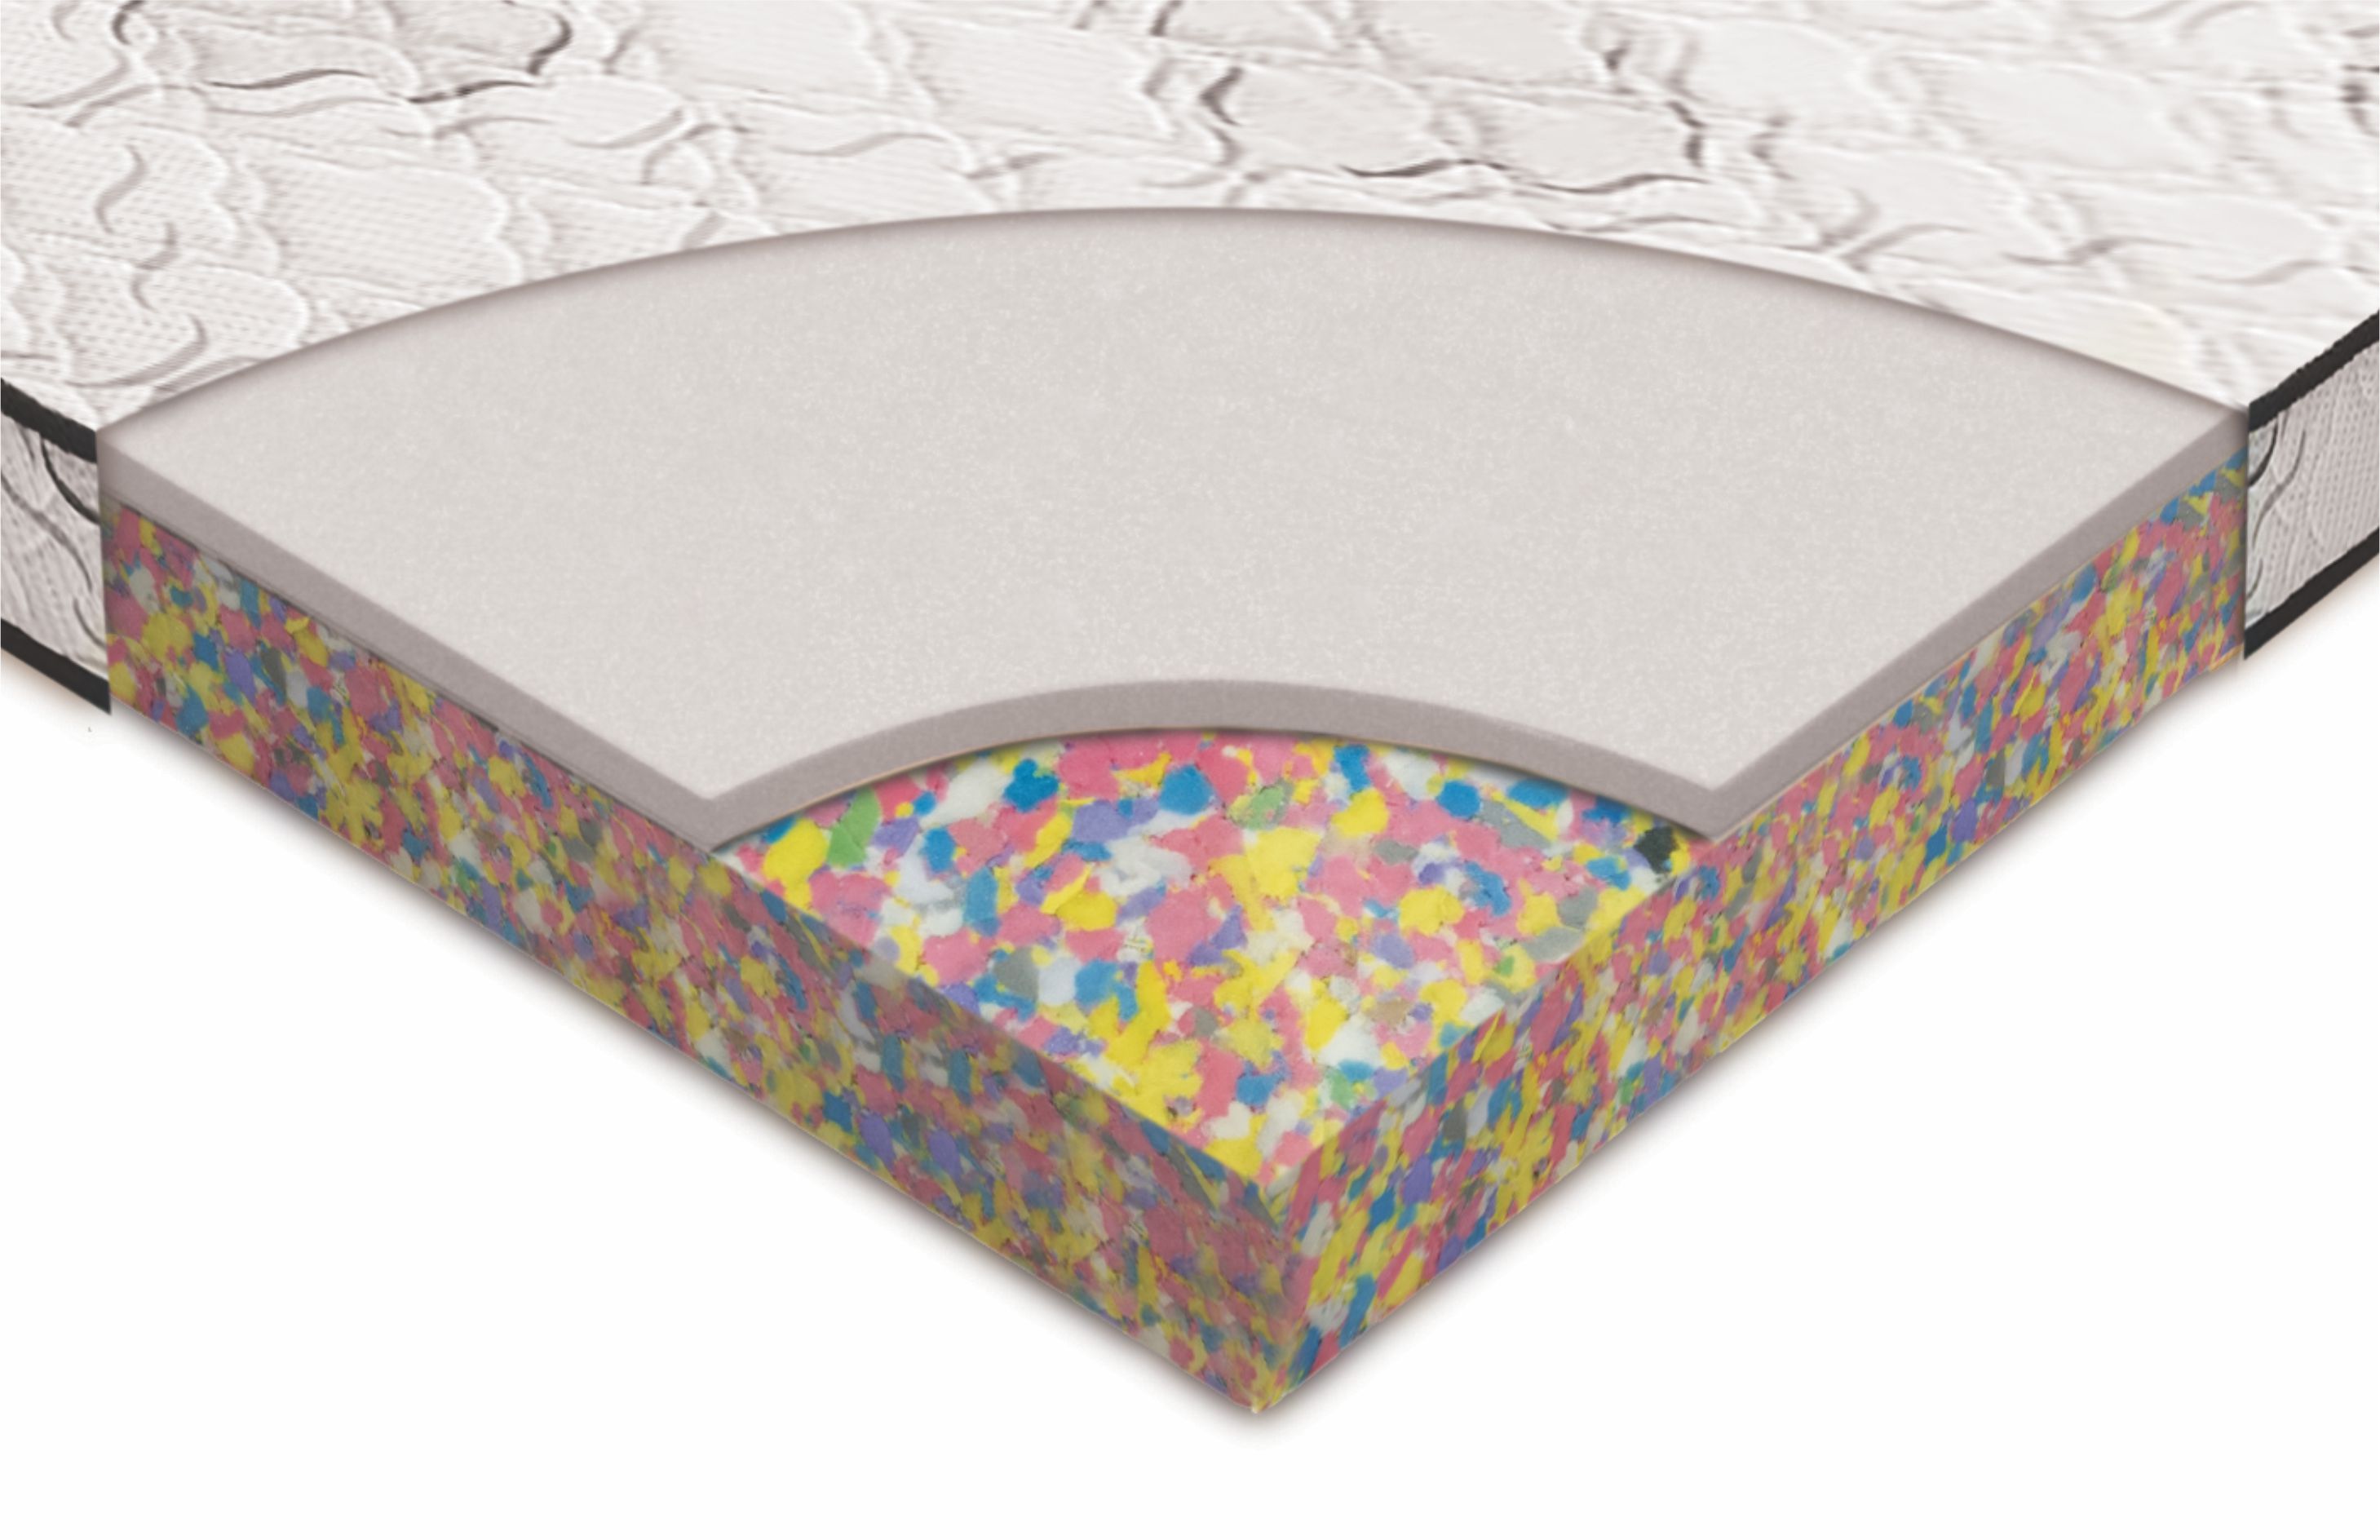 bonded foam mattress buy online